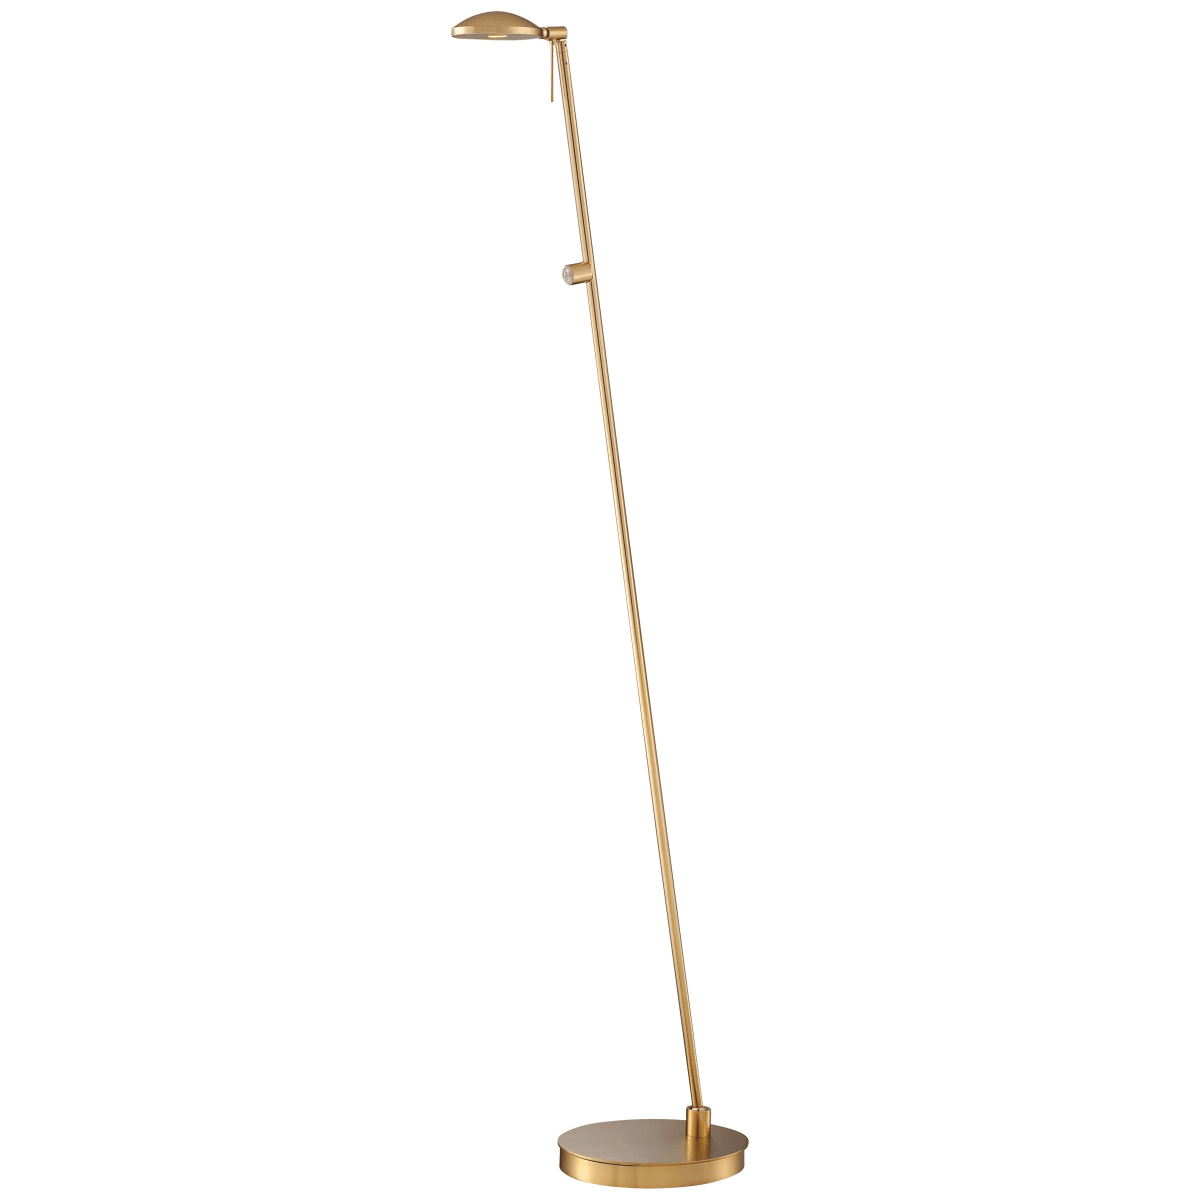 Kovacs P4334-248 Light LED Floor Lamp in Honey Gold from